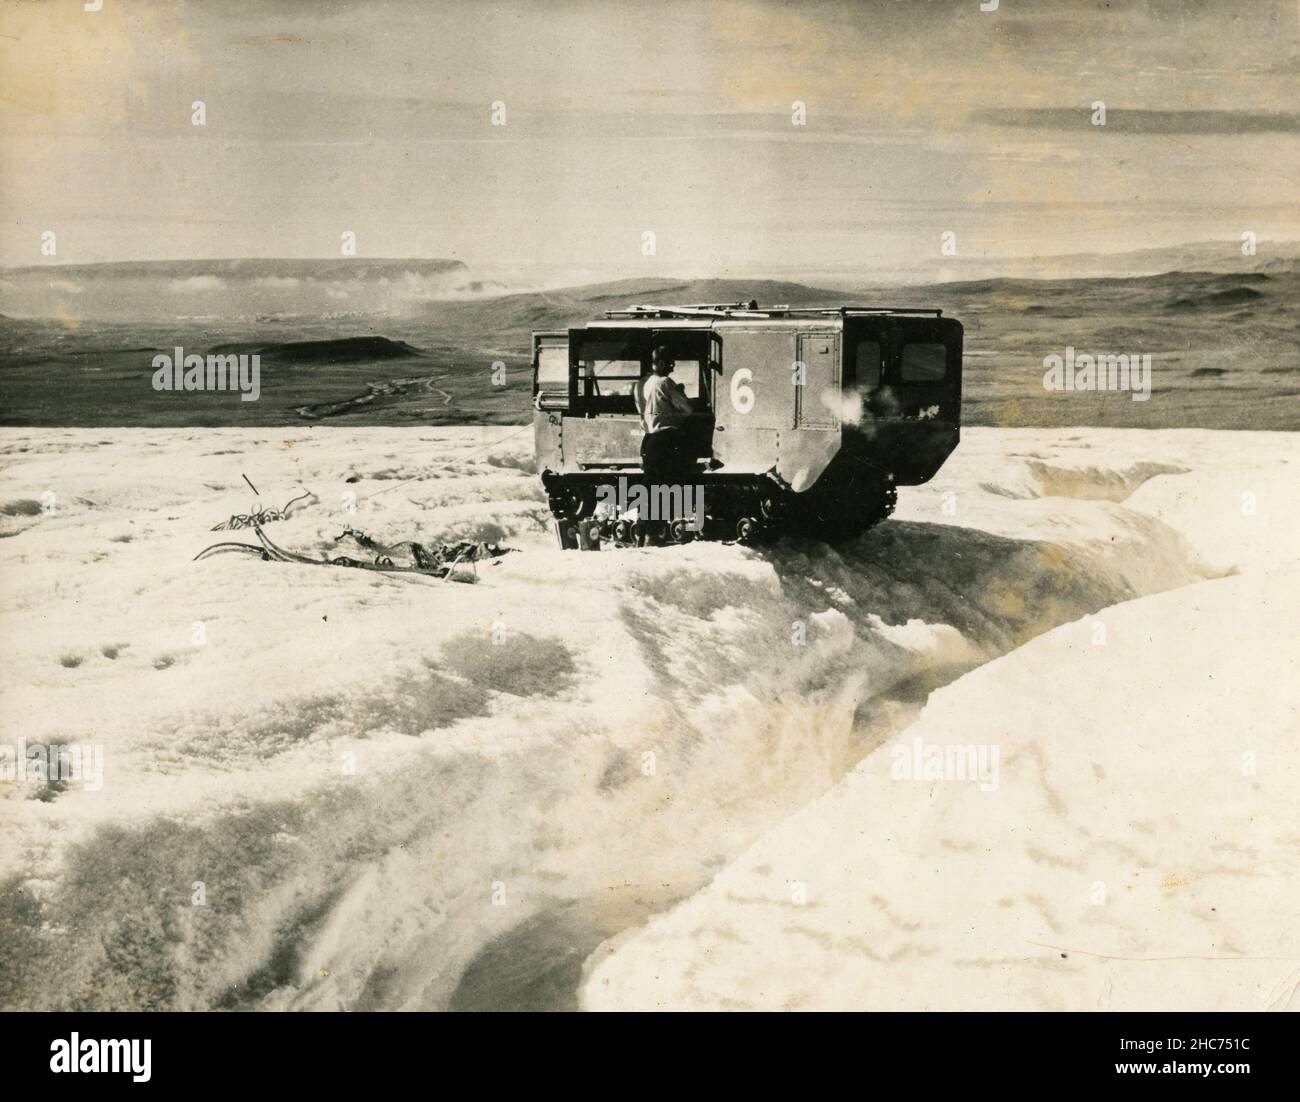 Schneereiskrawler für die Polarexpedition, Antarktis 1950s Stockfoto